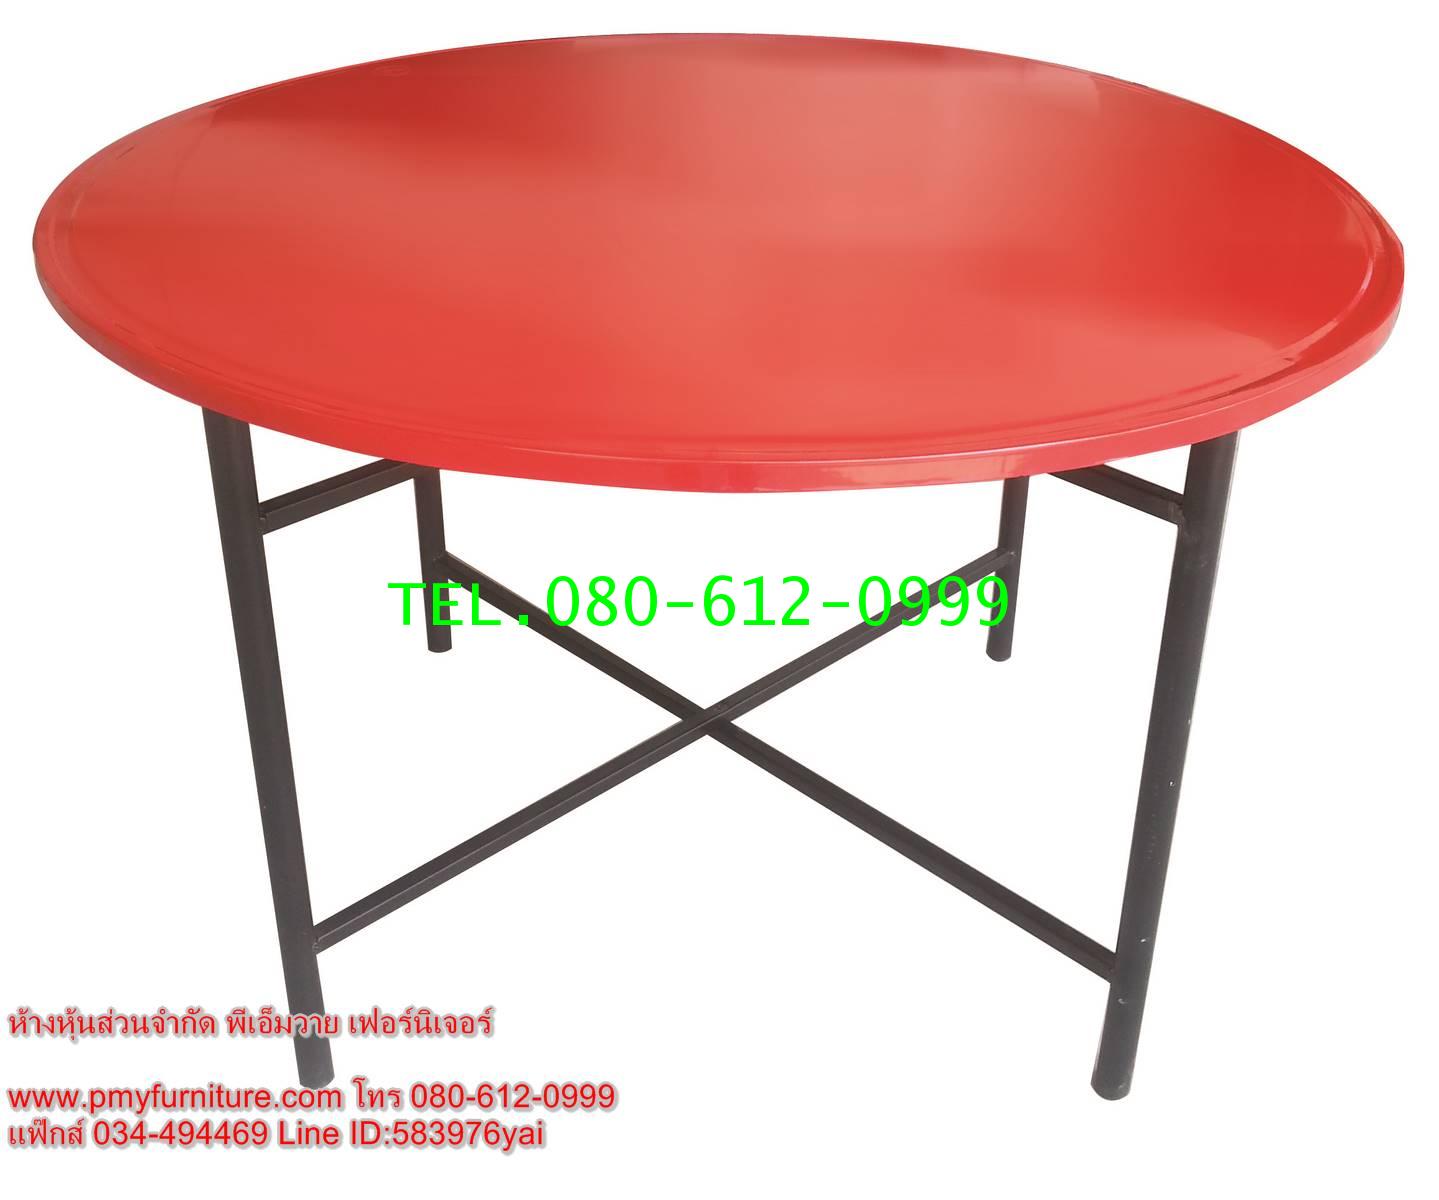 pmy31-2 โต๊ะพับหน้าเหล็กกลม ขนาด 120x75 ซม. 0